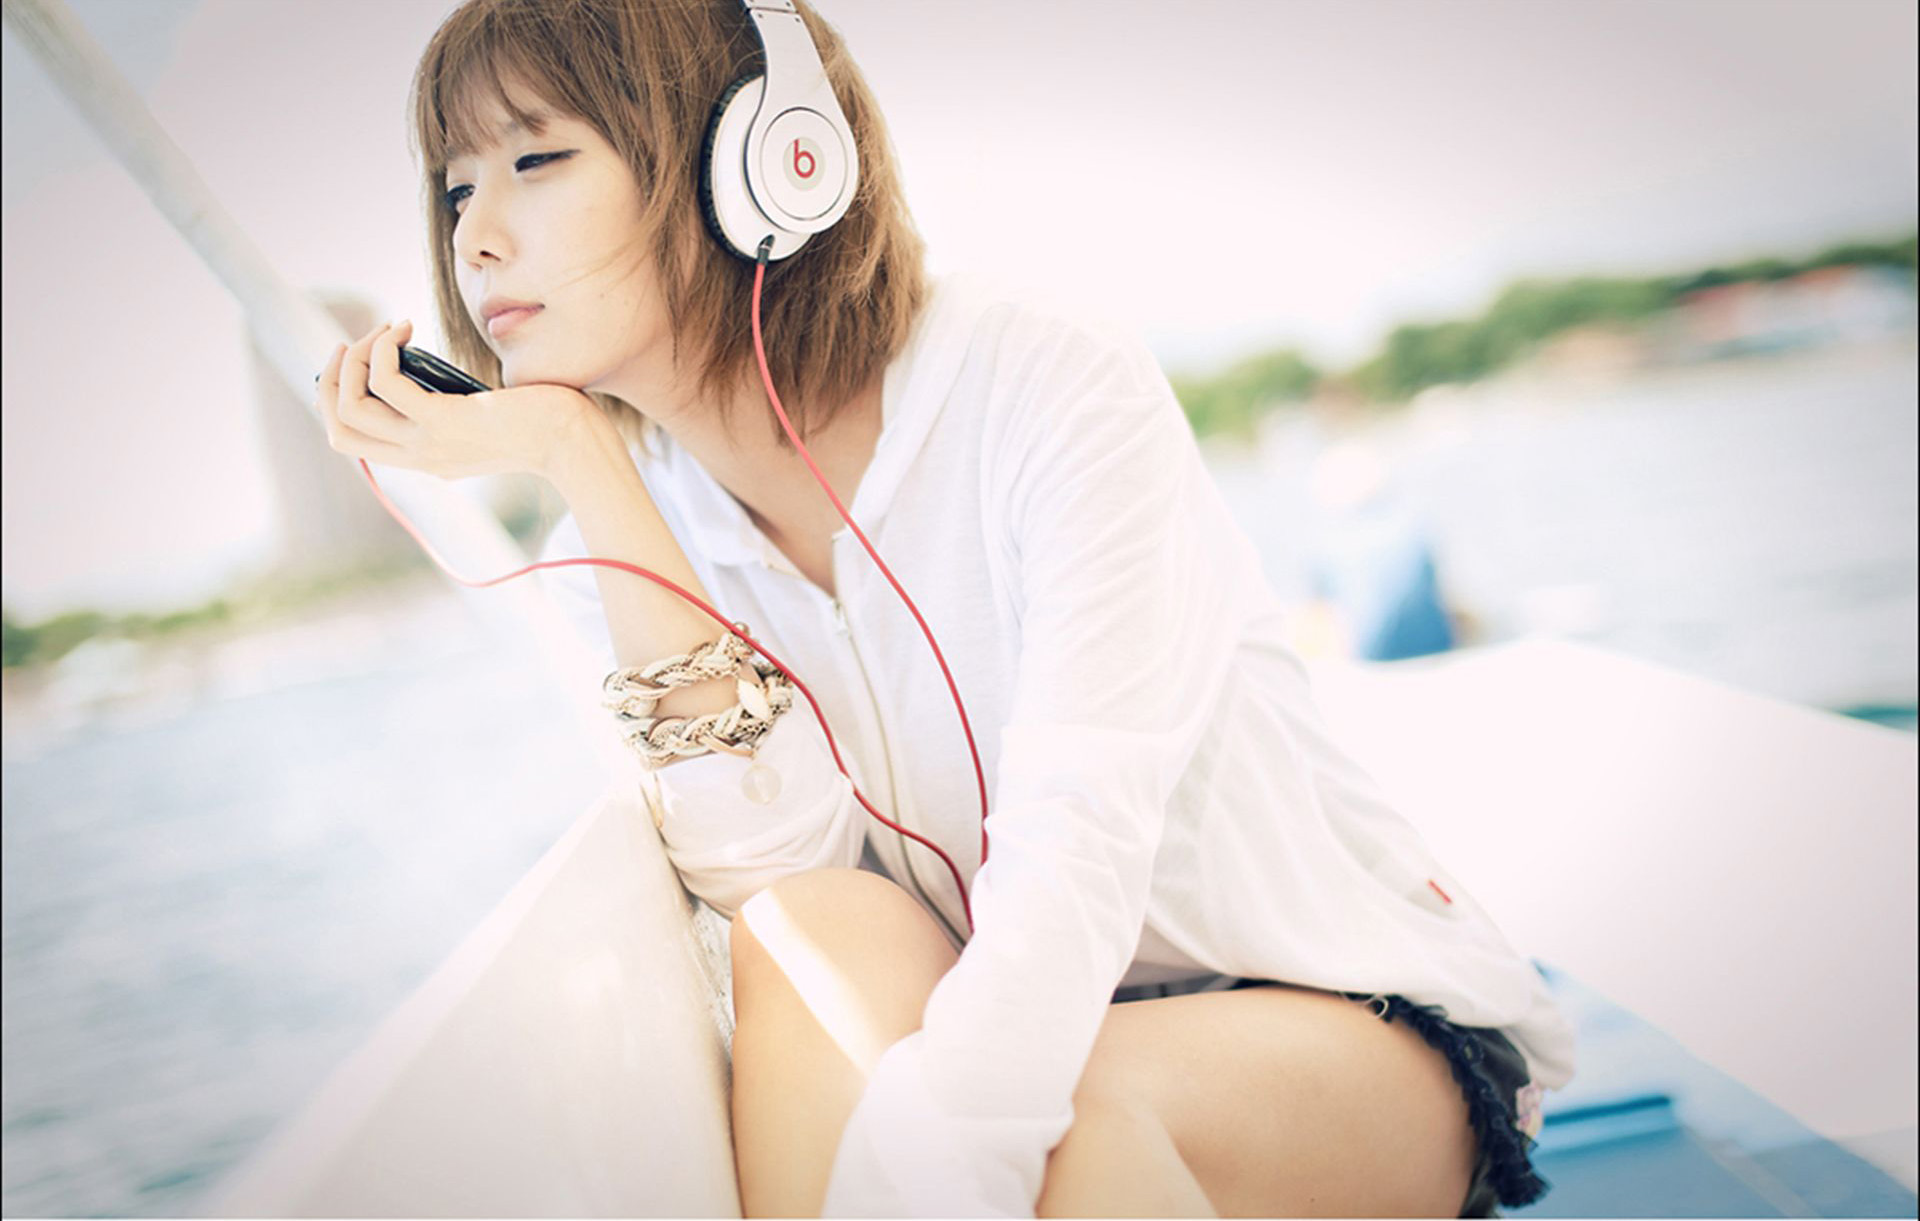 Xu Yunmei (허윤미) "Chica fresca de auriculares" Página 47 No.2adba9